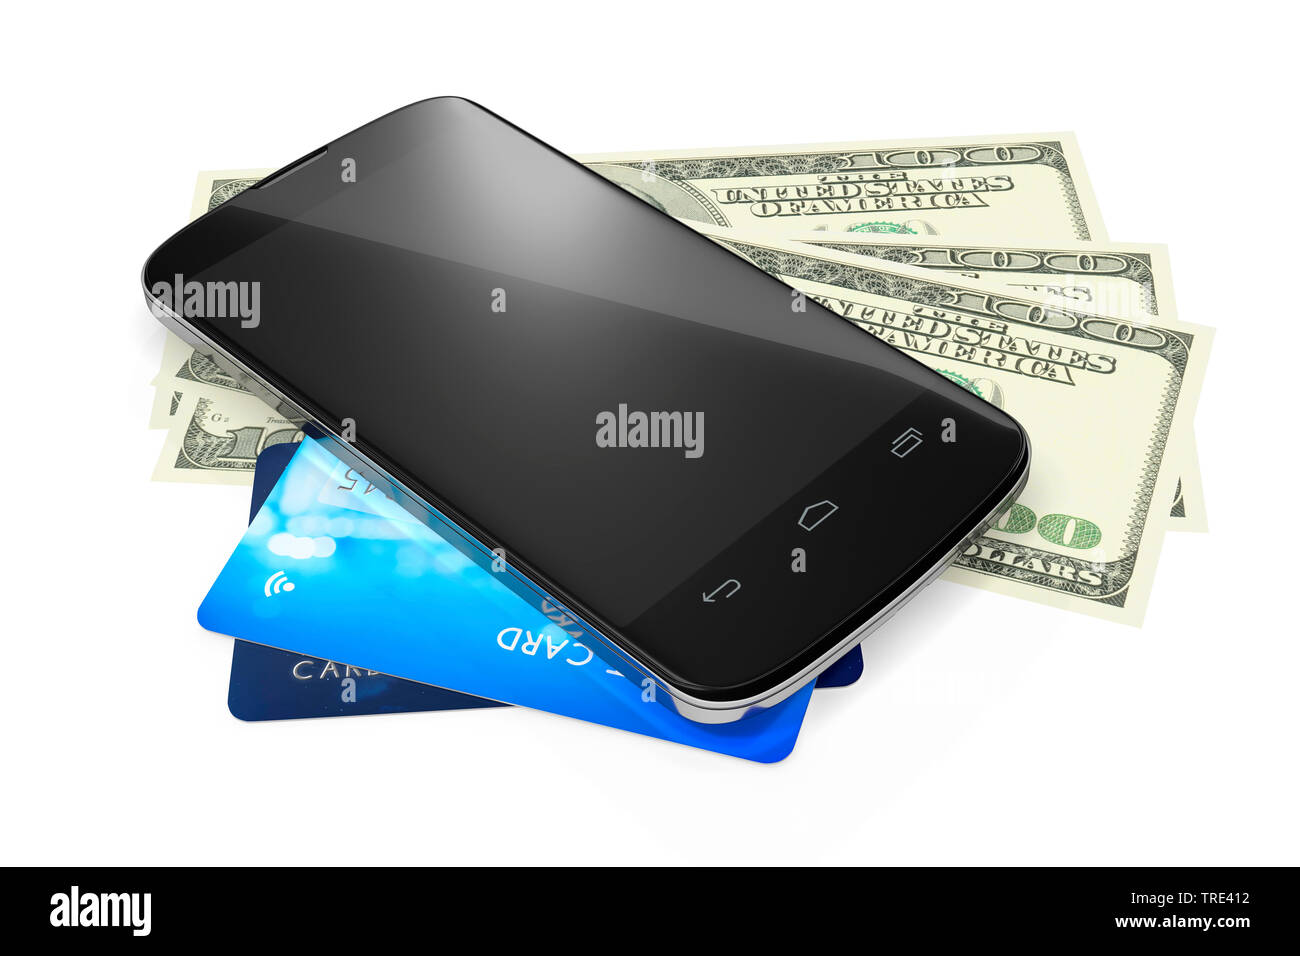 Mobile phone lying sur les cartes de crédit et l'argent comptant (paiement par mobile) Banque D'Images